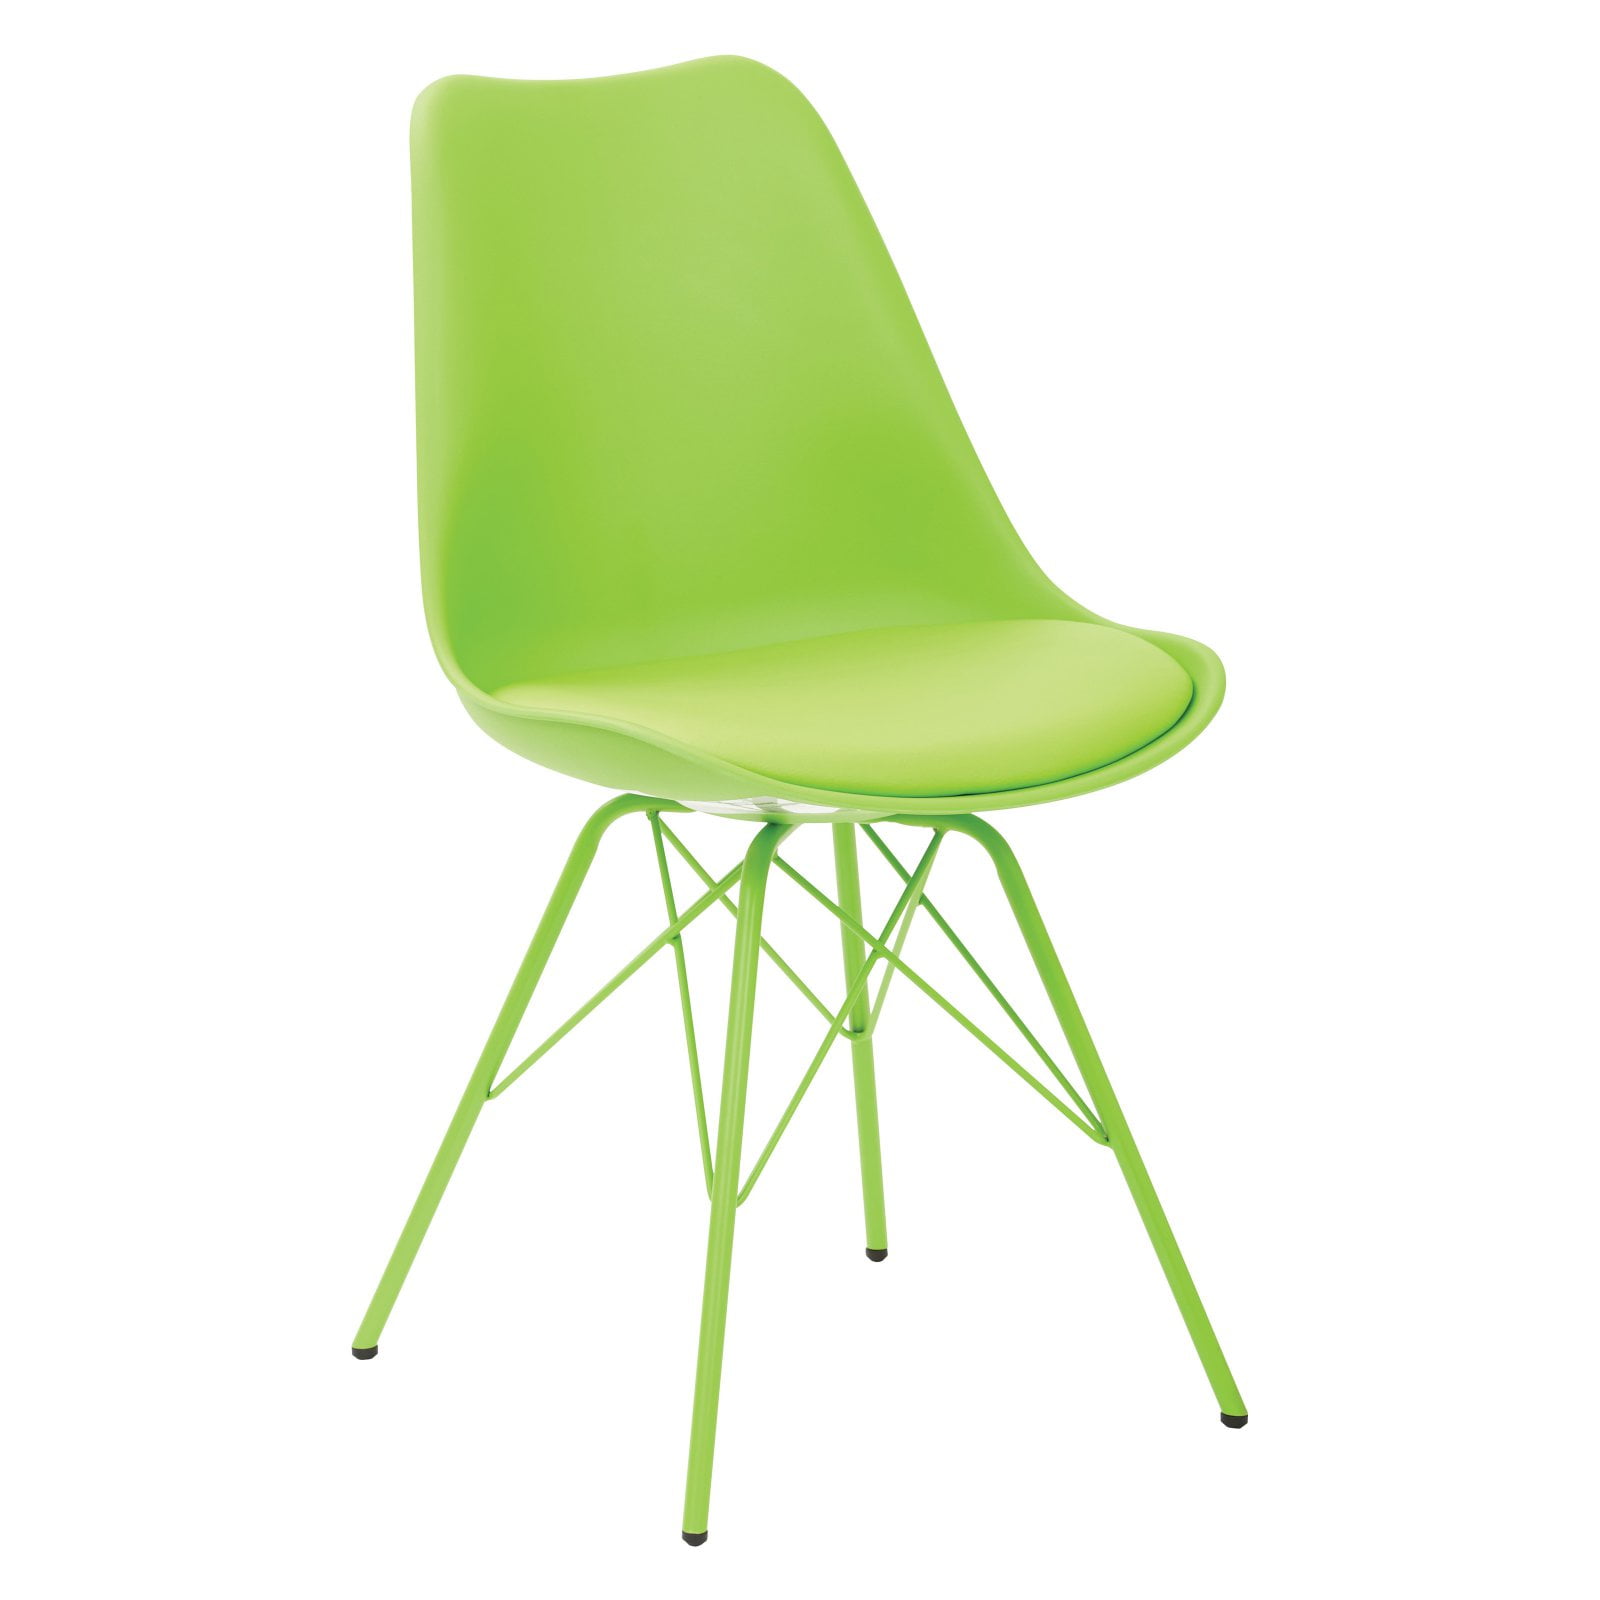 Зеленый стул. Стул салатовый. Зеленый деревянный стул. Стул светло зеленый.